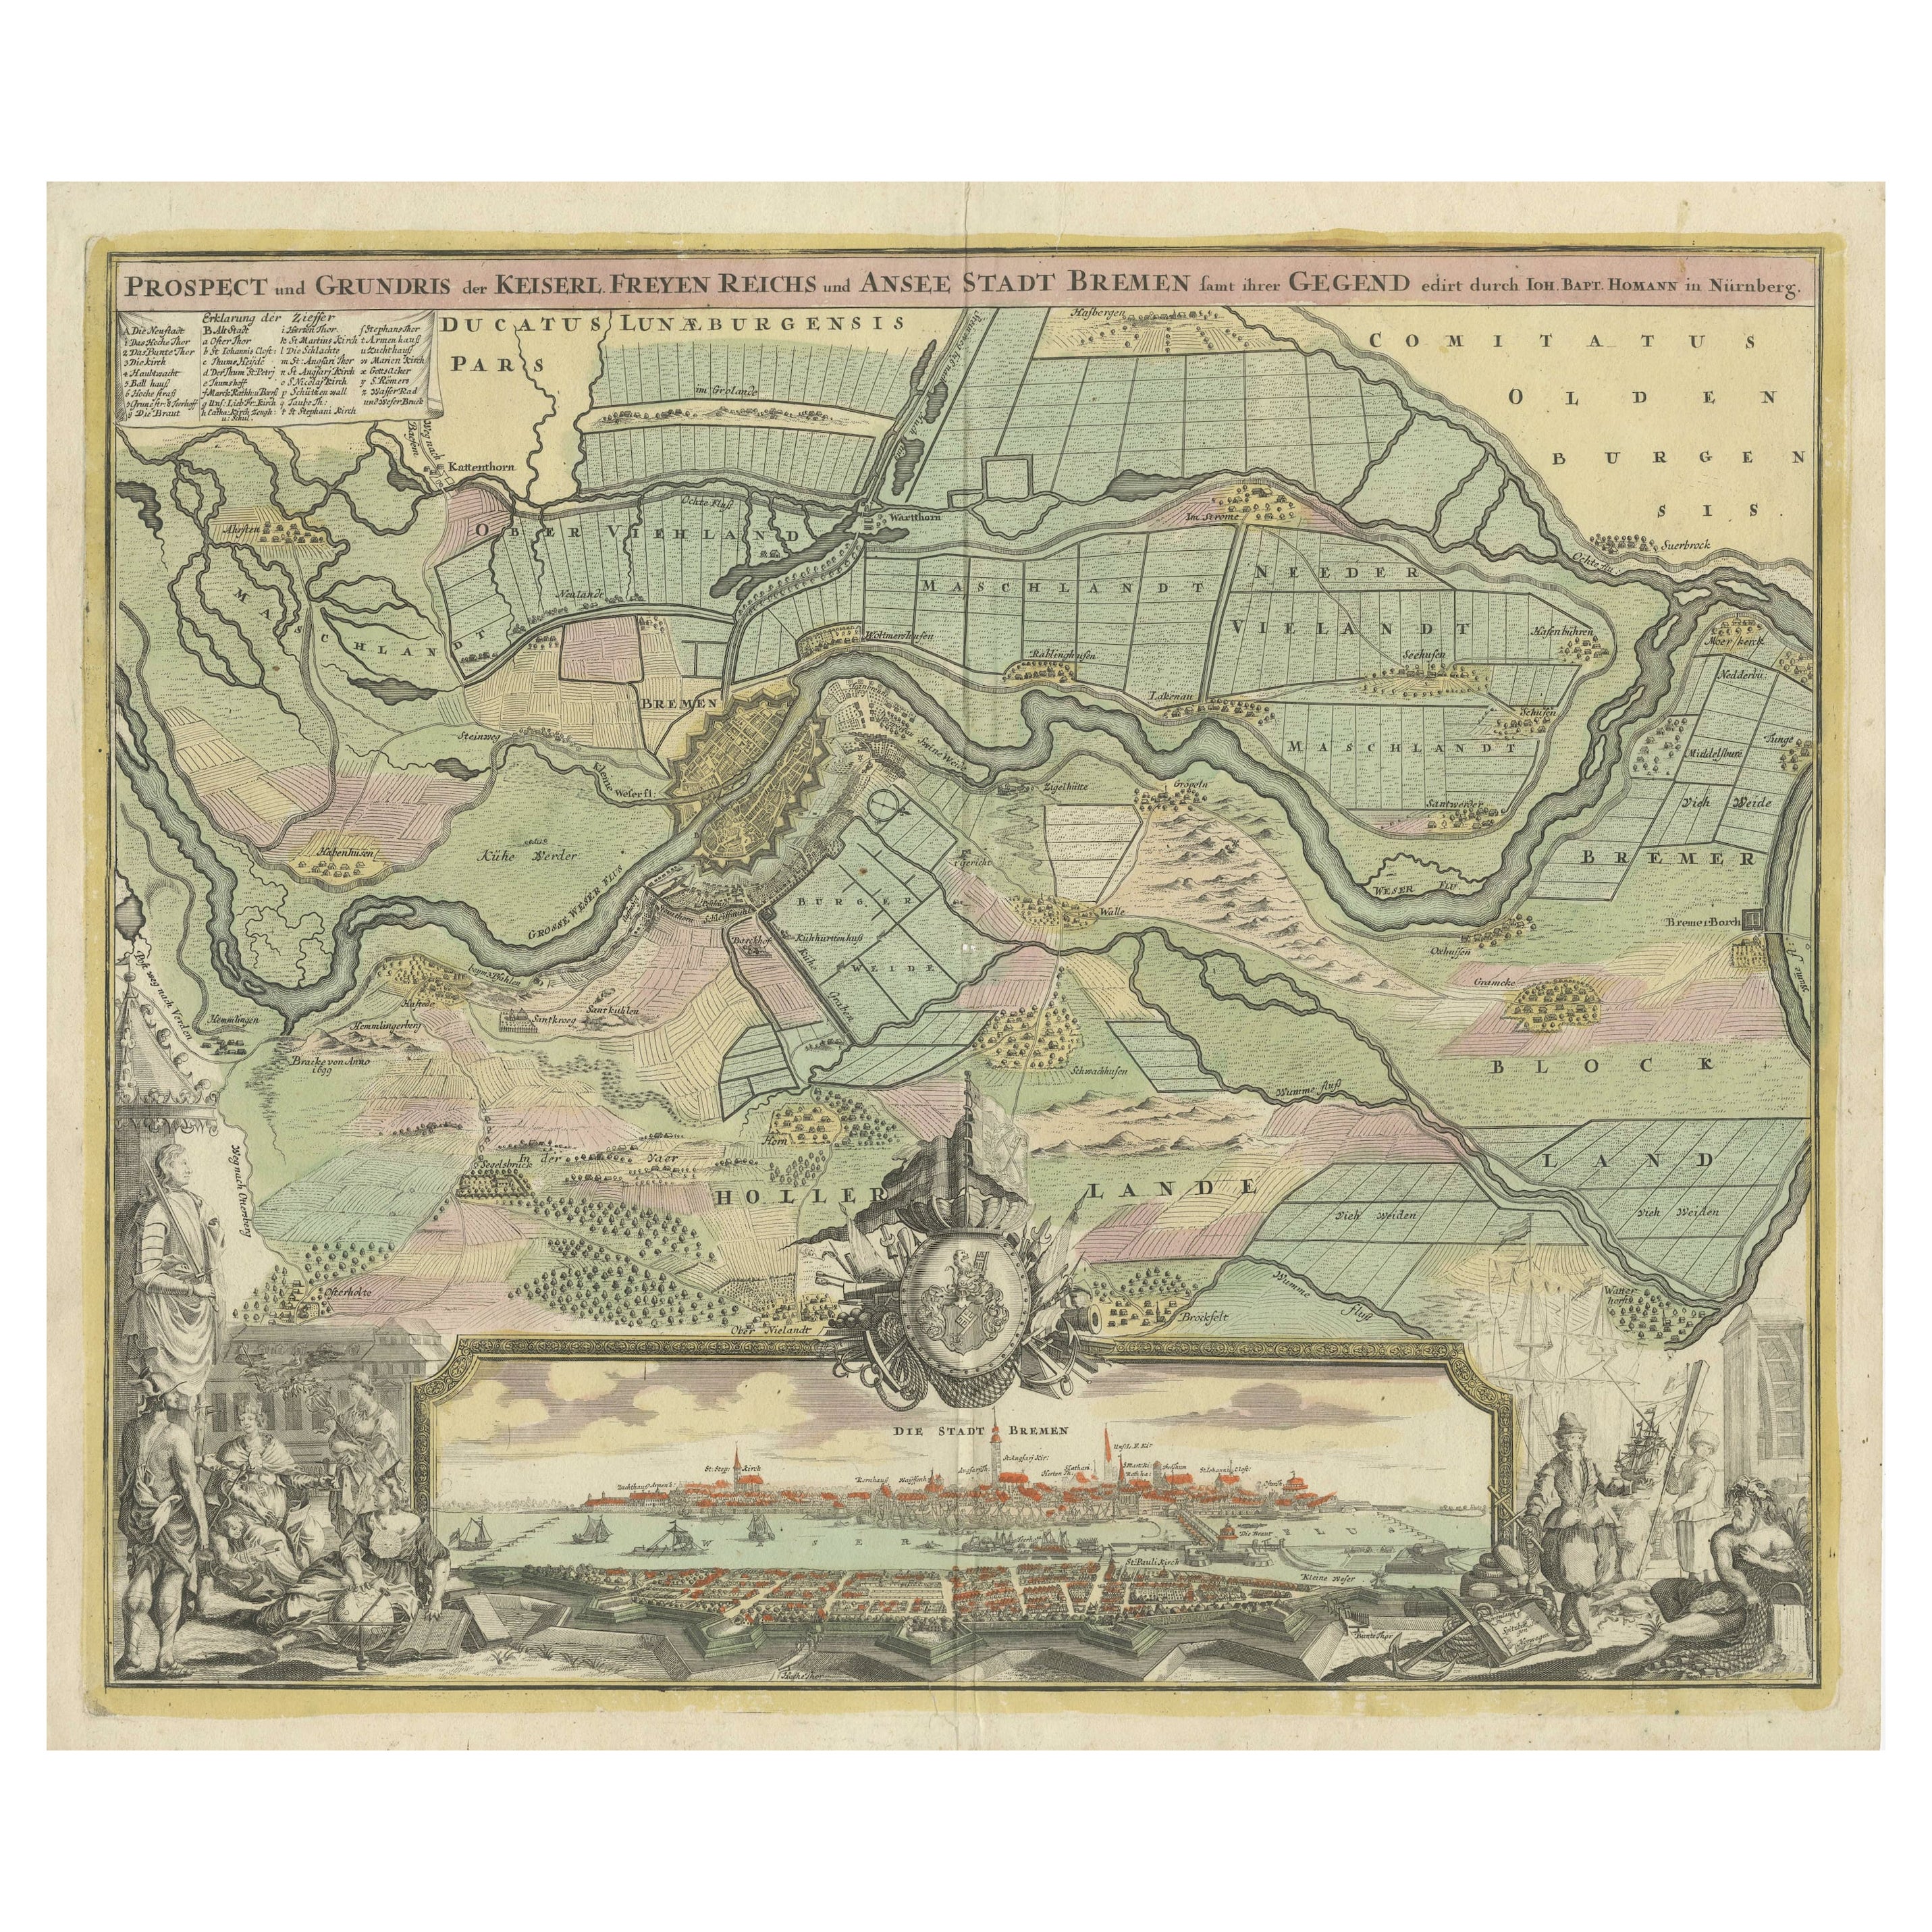 Große antike Karte der Stadt Bremen und ihrer Umgebung, Deutschland